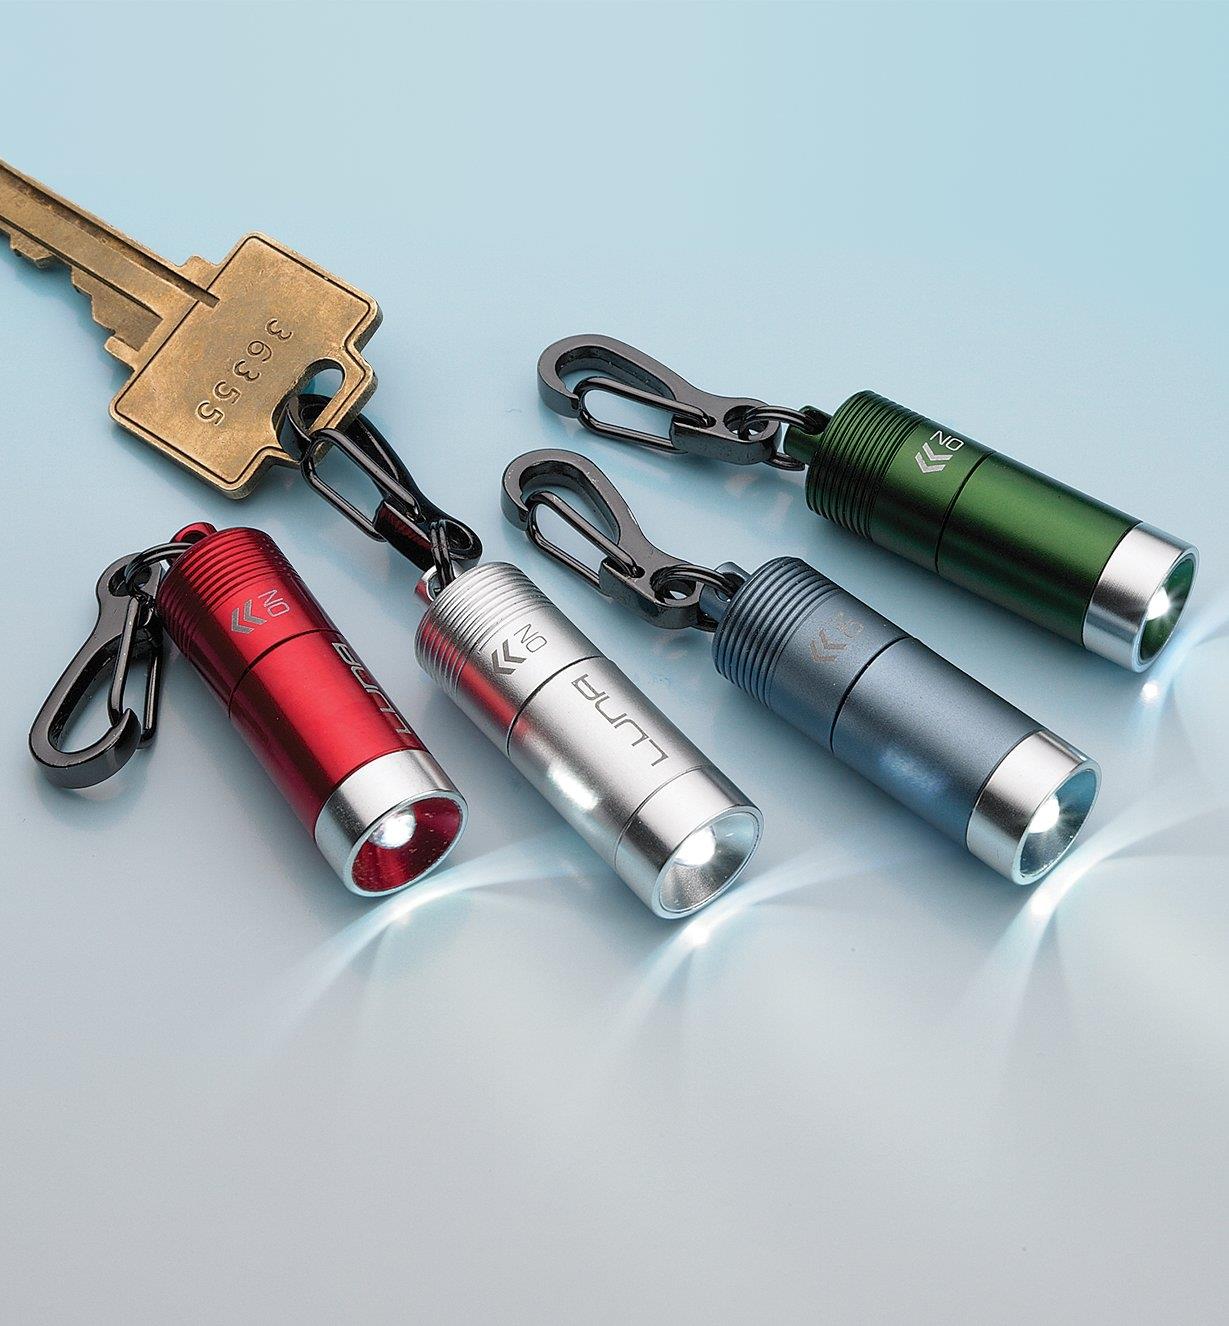 La minilampe DEL à mousqueton est offerte en couleurs variées, selon la disponibilité.